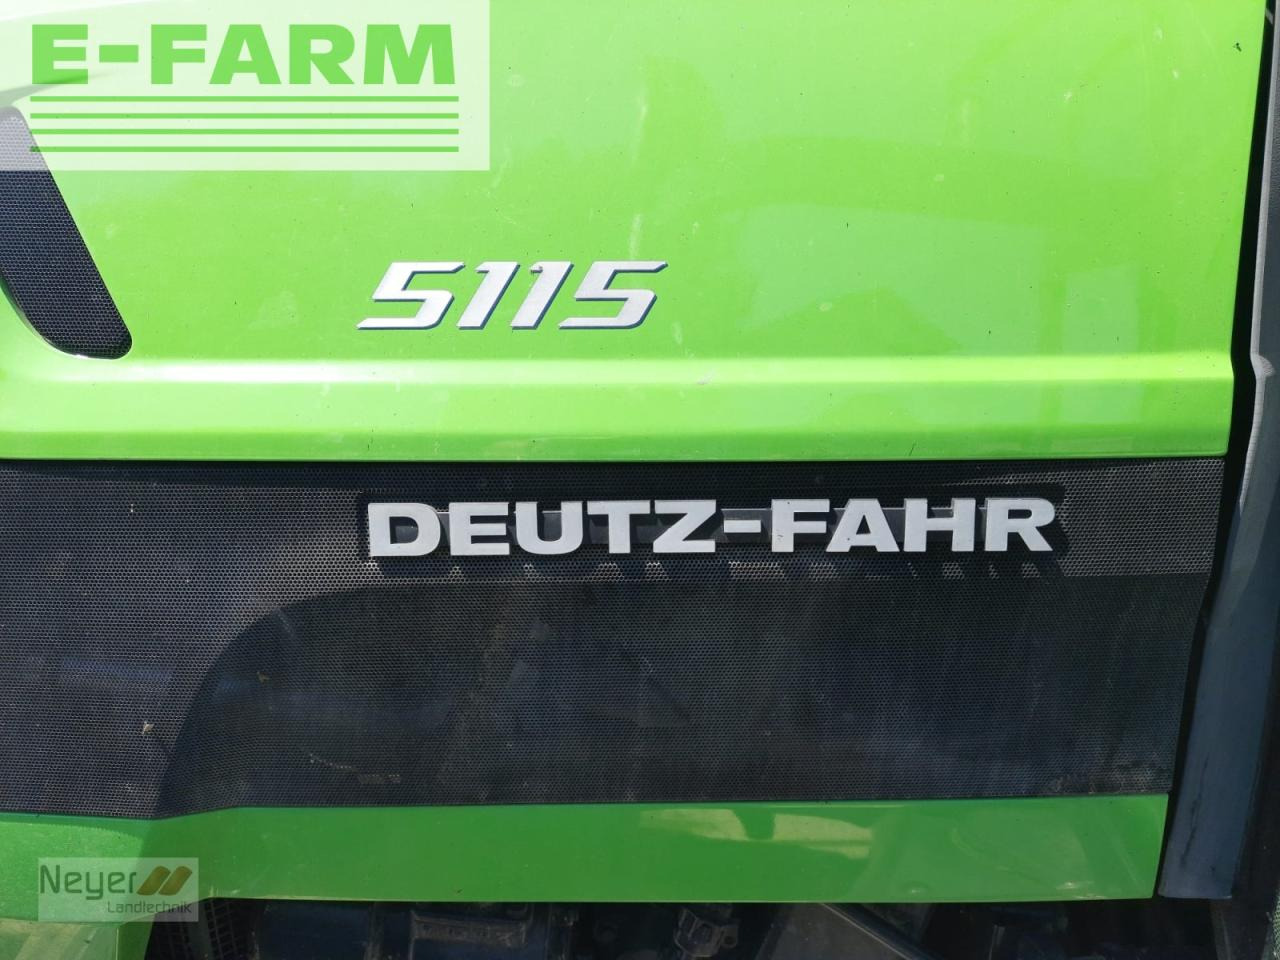 טרקטור חקלאי Deutz-Fahr 5115: תמונה 7